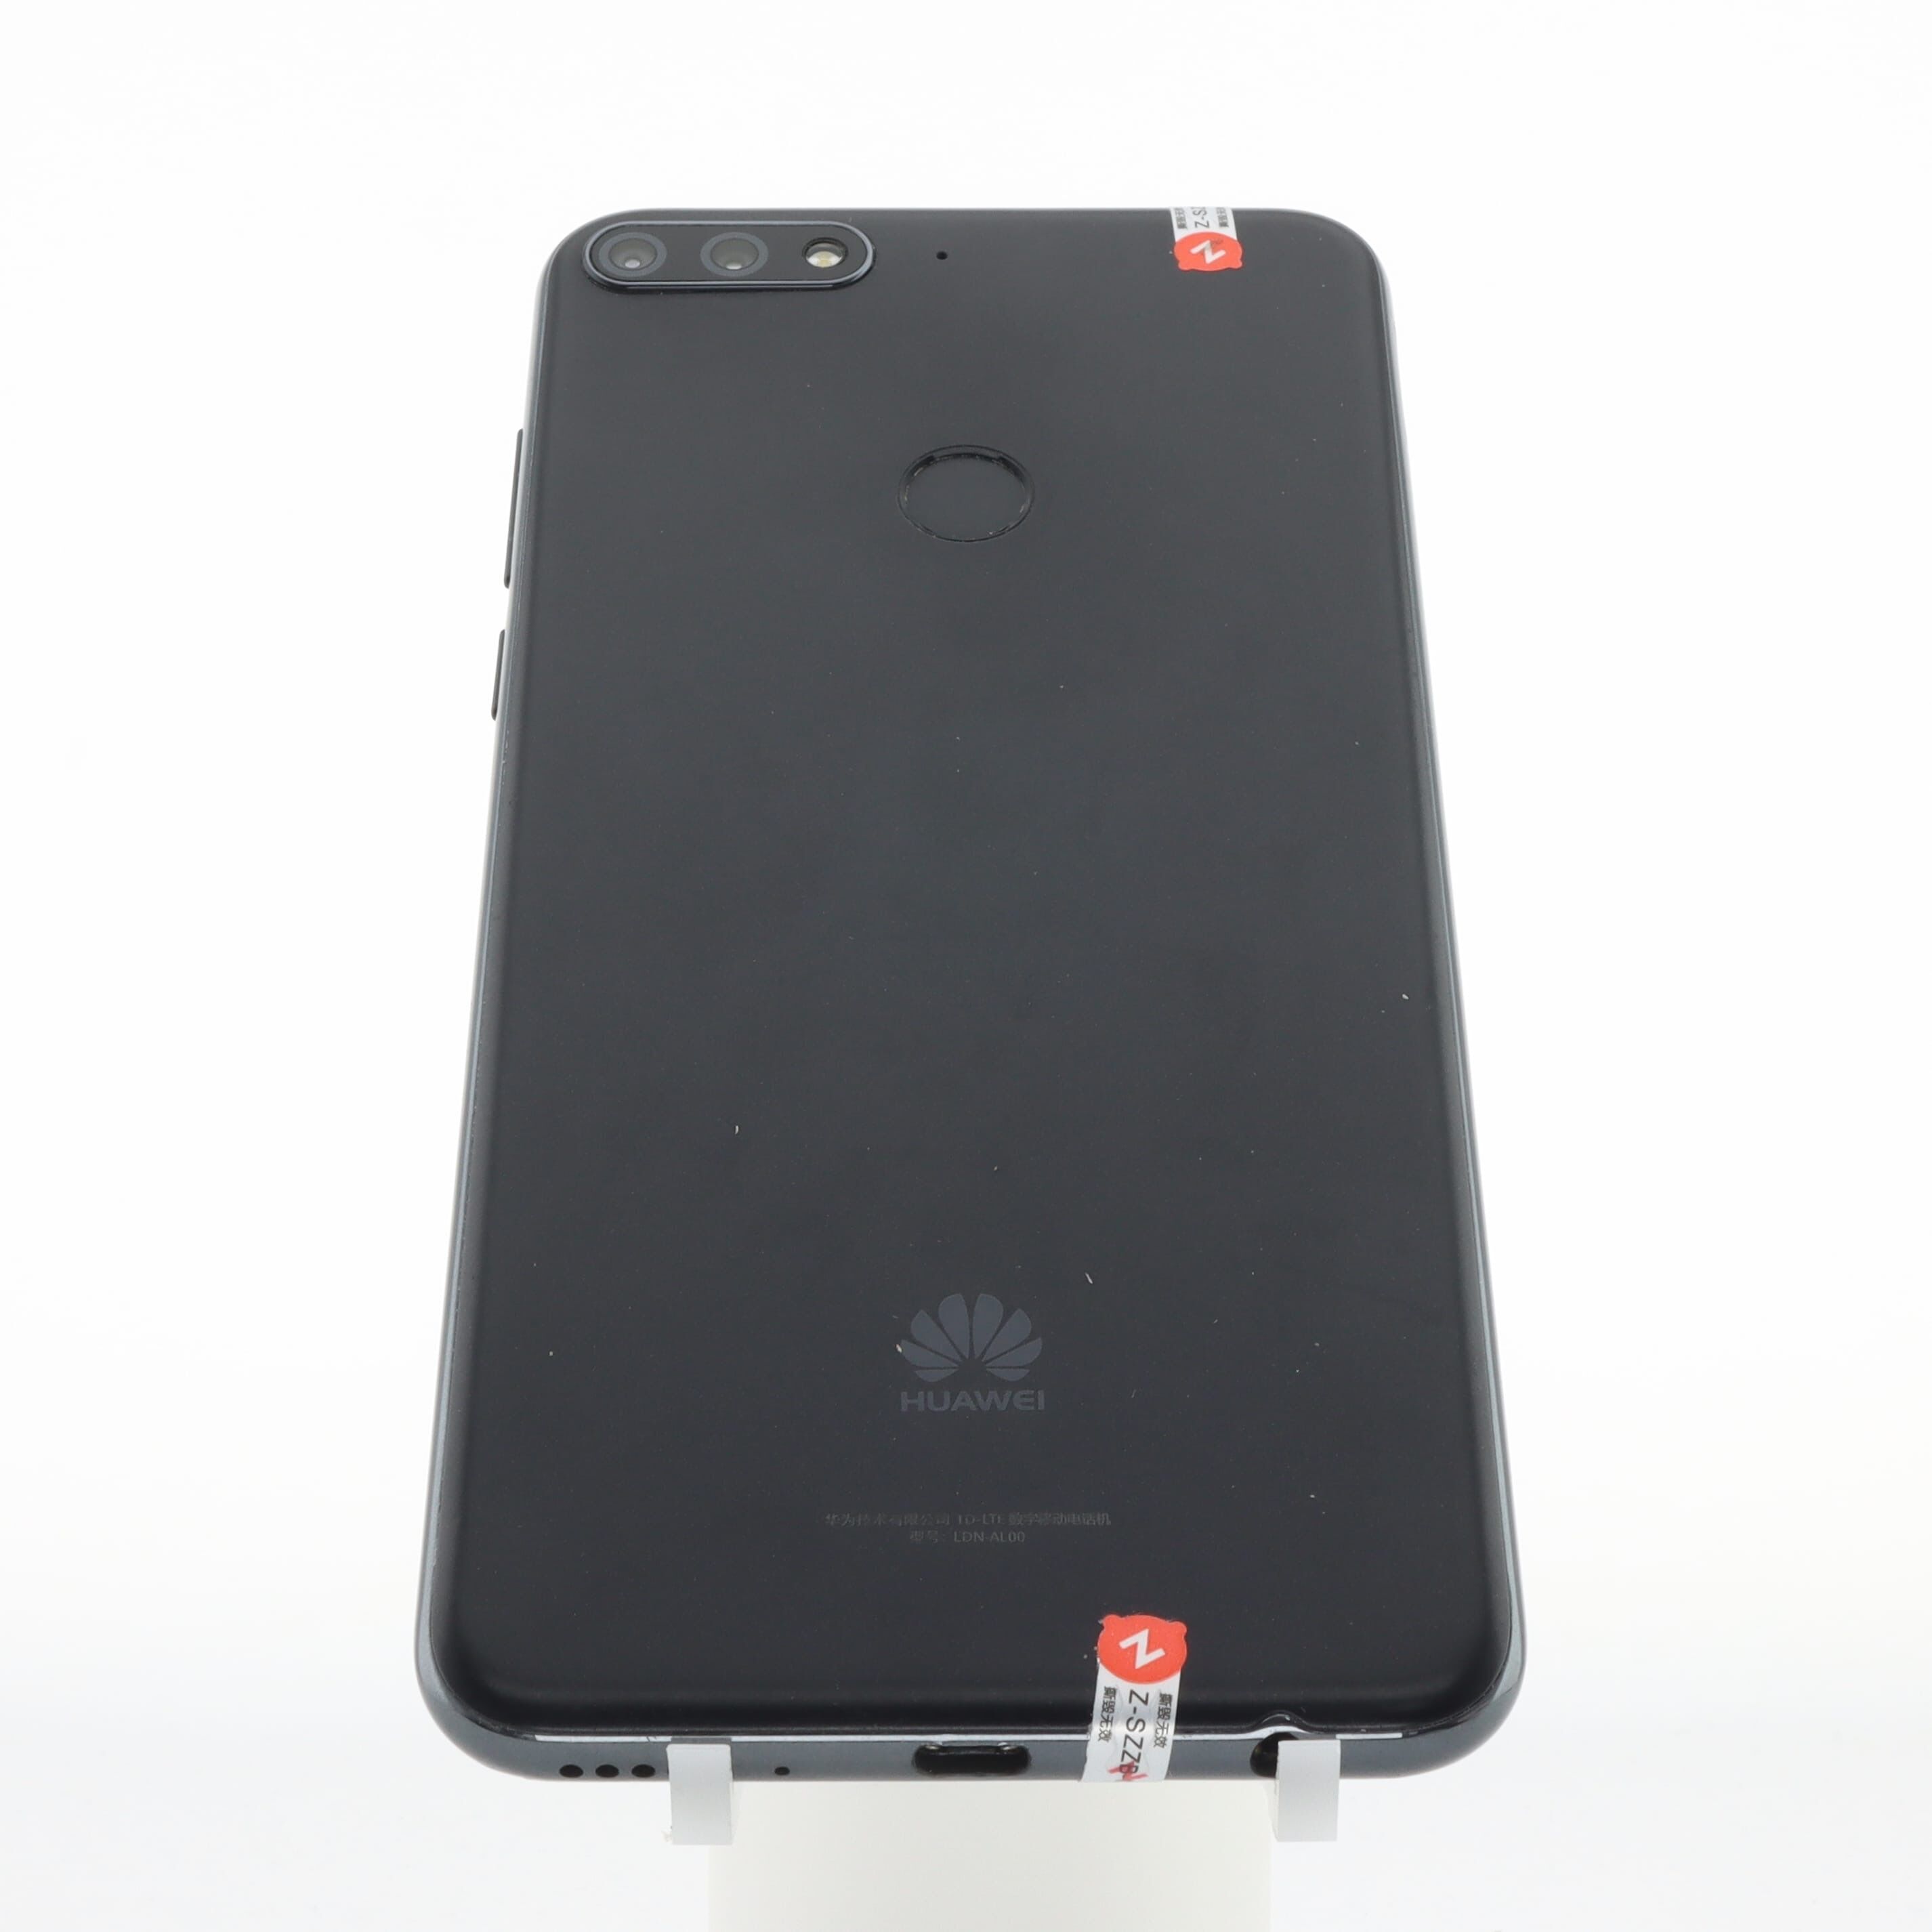 Huawei enjoy 8 4G